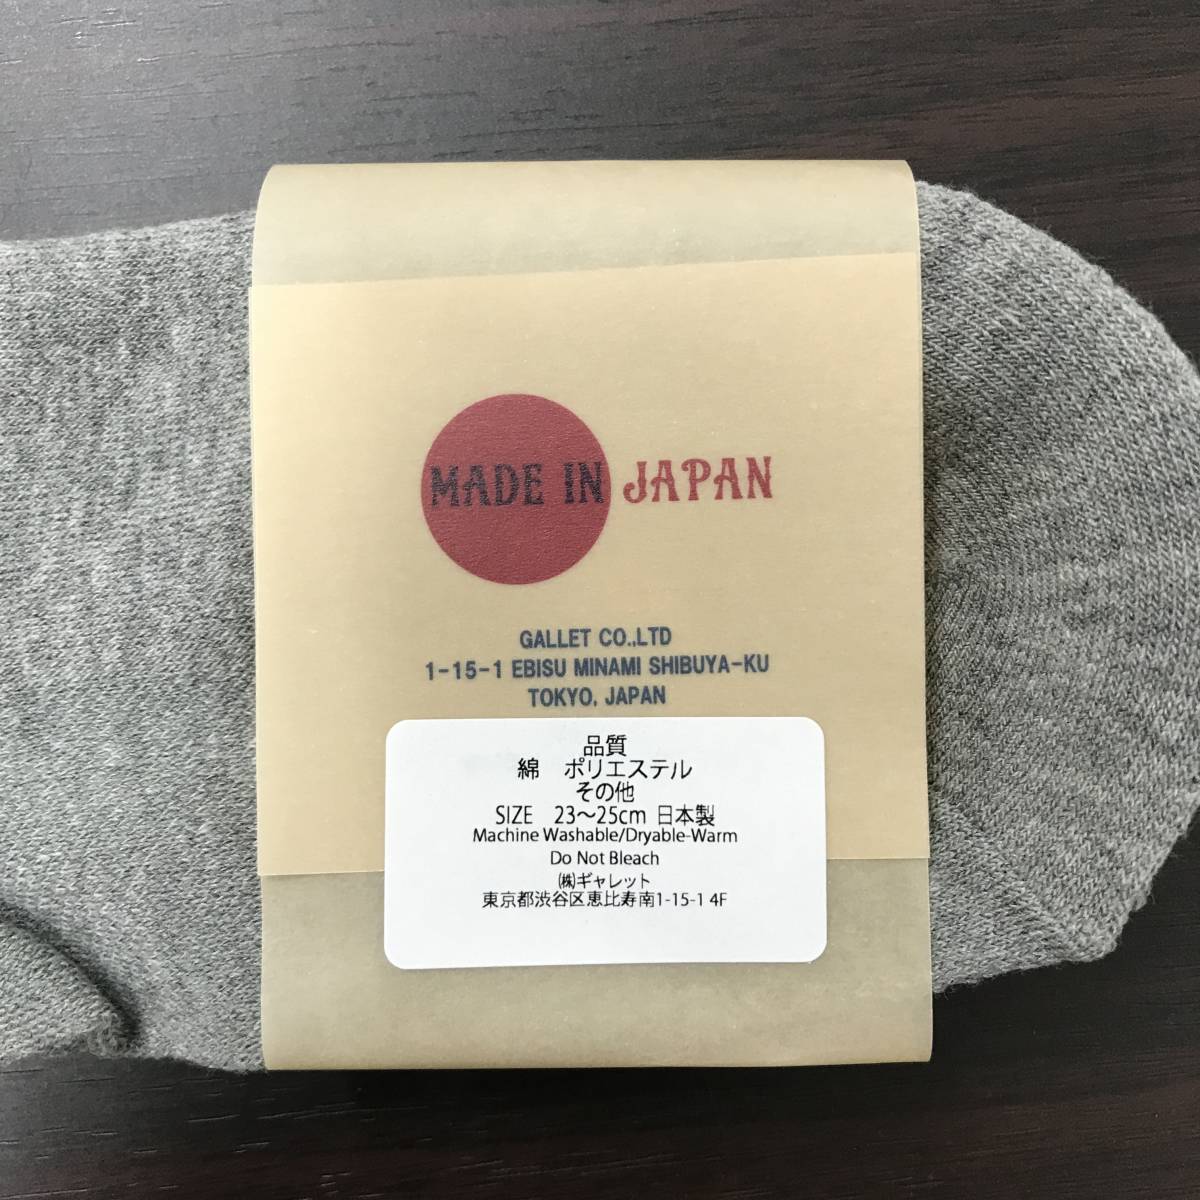 9 комплект не использовался /23-25cm/ ANONYMOUSISM носки обувь внизу носки серый лодыжка нога одежда сделано в Японии .... серый a нони форель izm